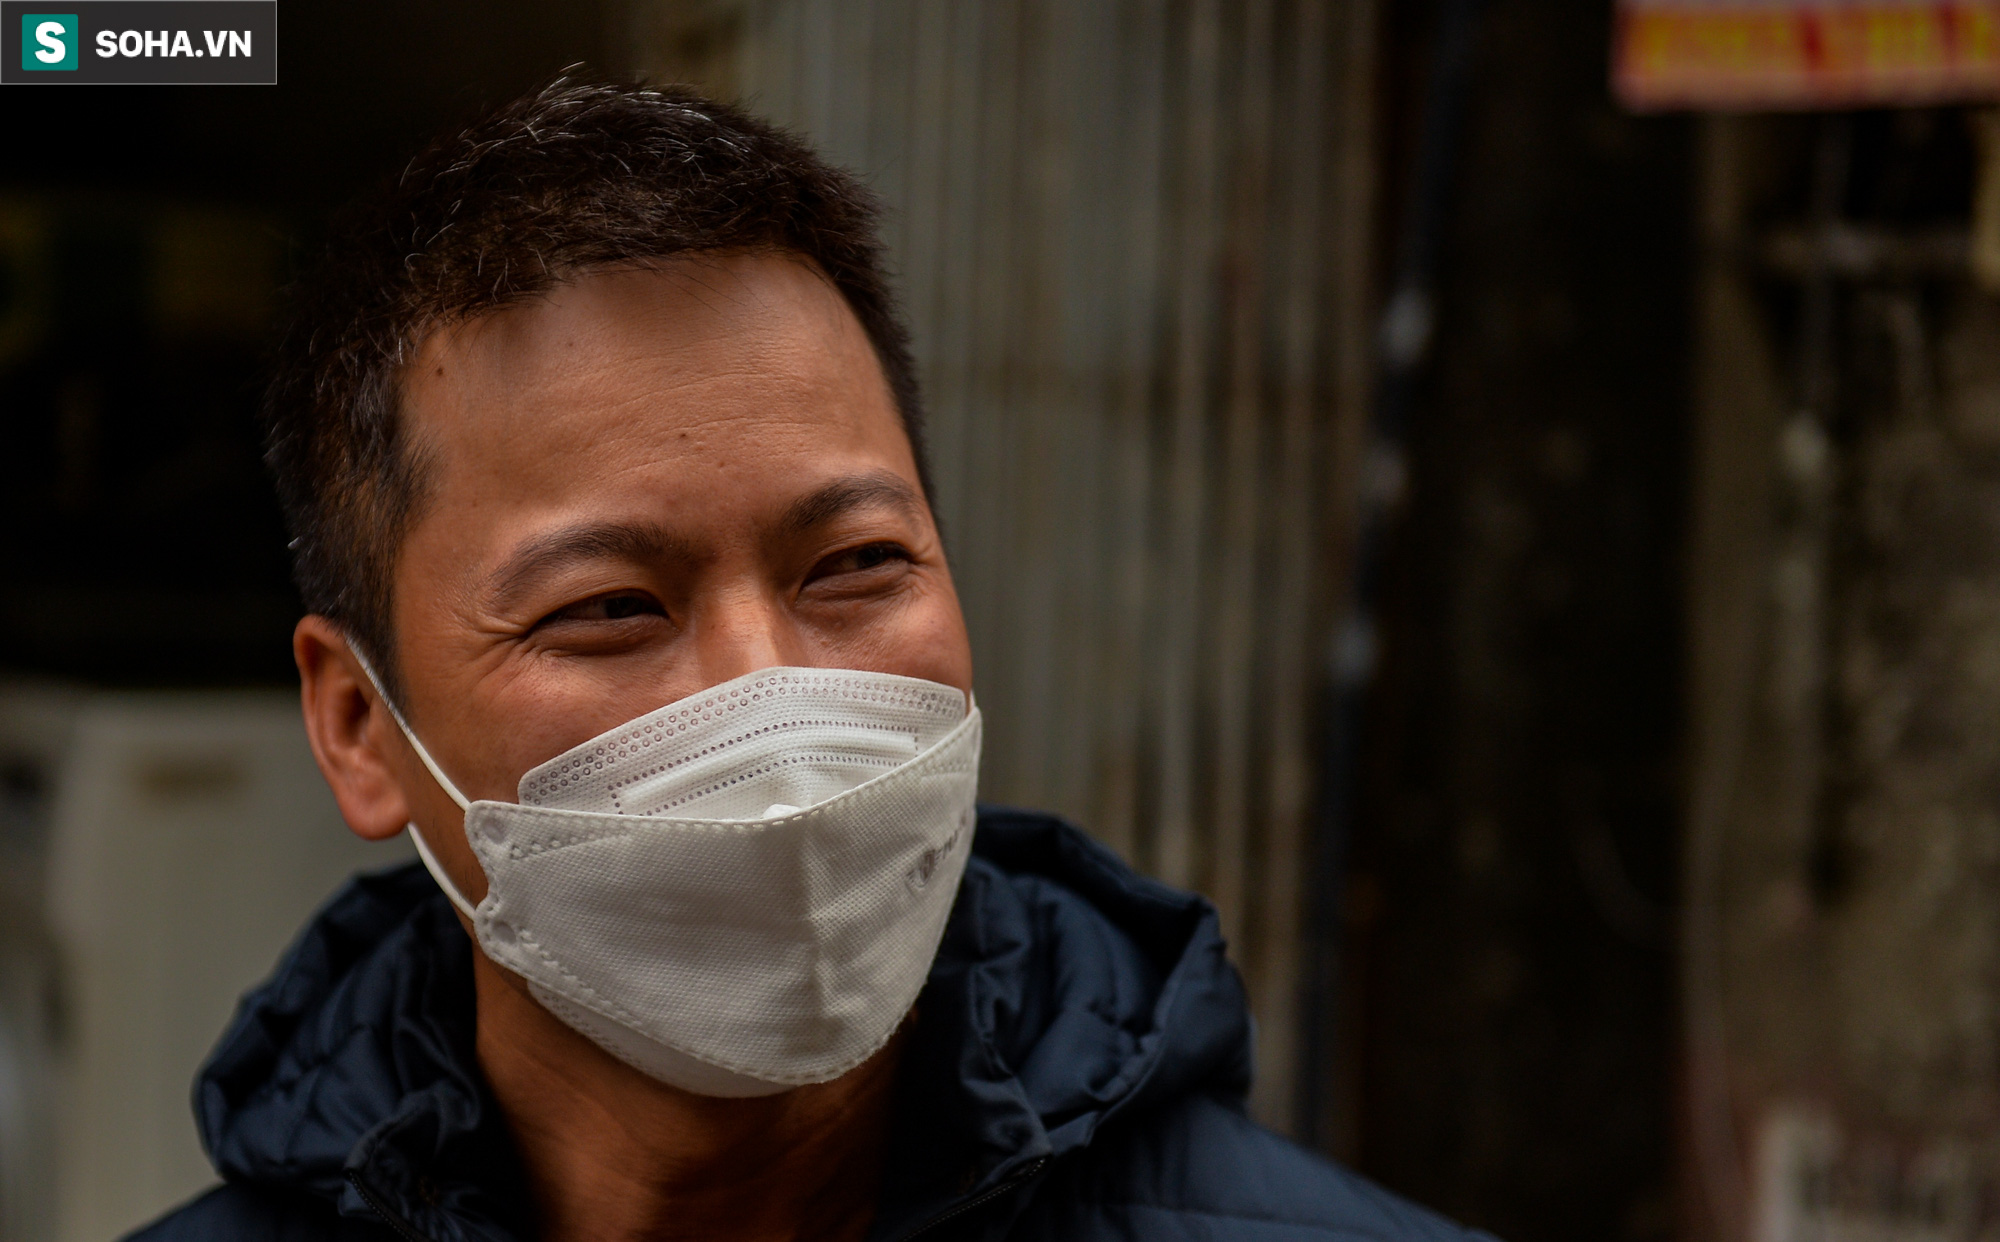 Vụ bé gái mắc kẹt trong ngôi nhà cháy ở Hà Nội: Anh thợ sửa điều hòa có đôi mắt cười kể về cảm giác “không thể nào tả được” bên khung cửa sổ sinh-tử - ảnh 6